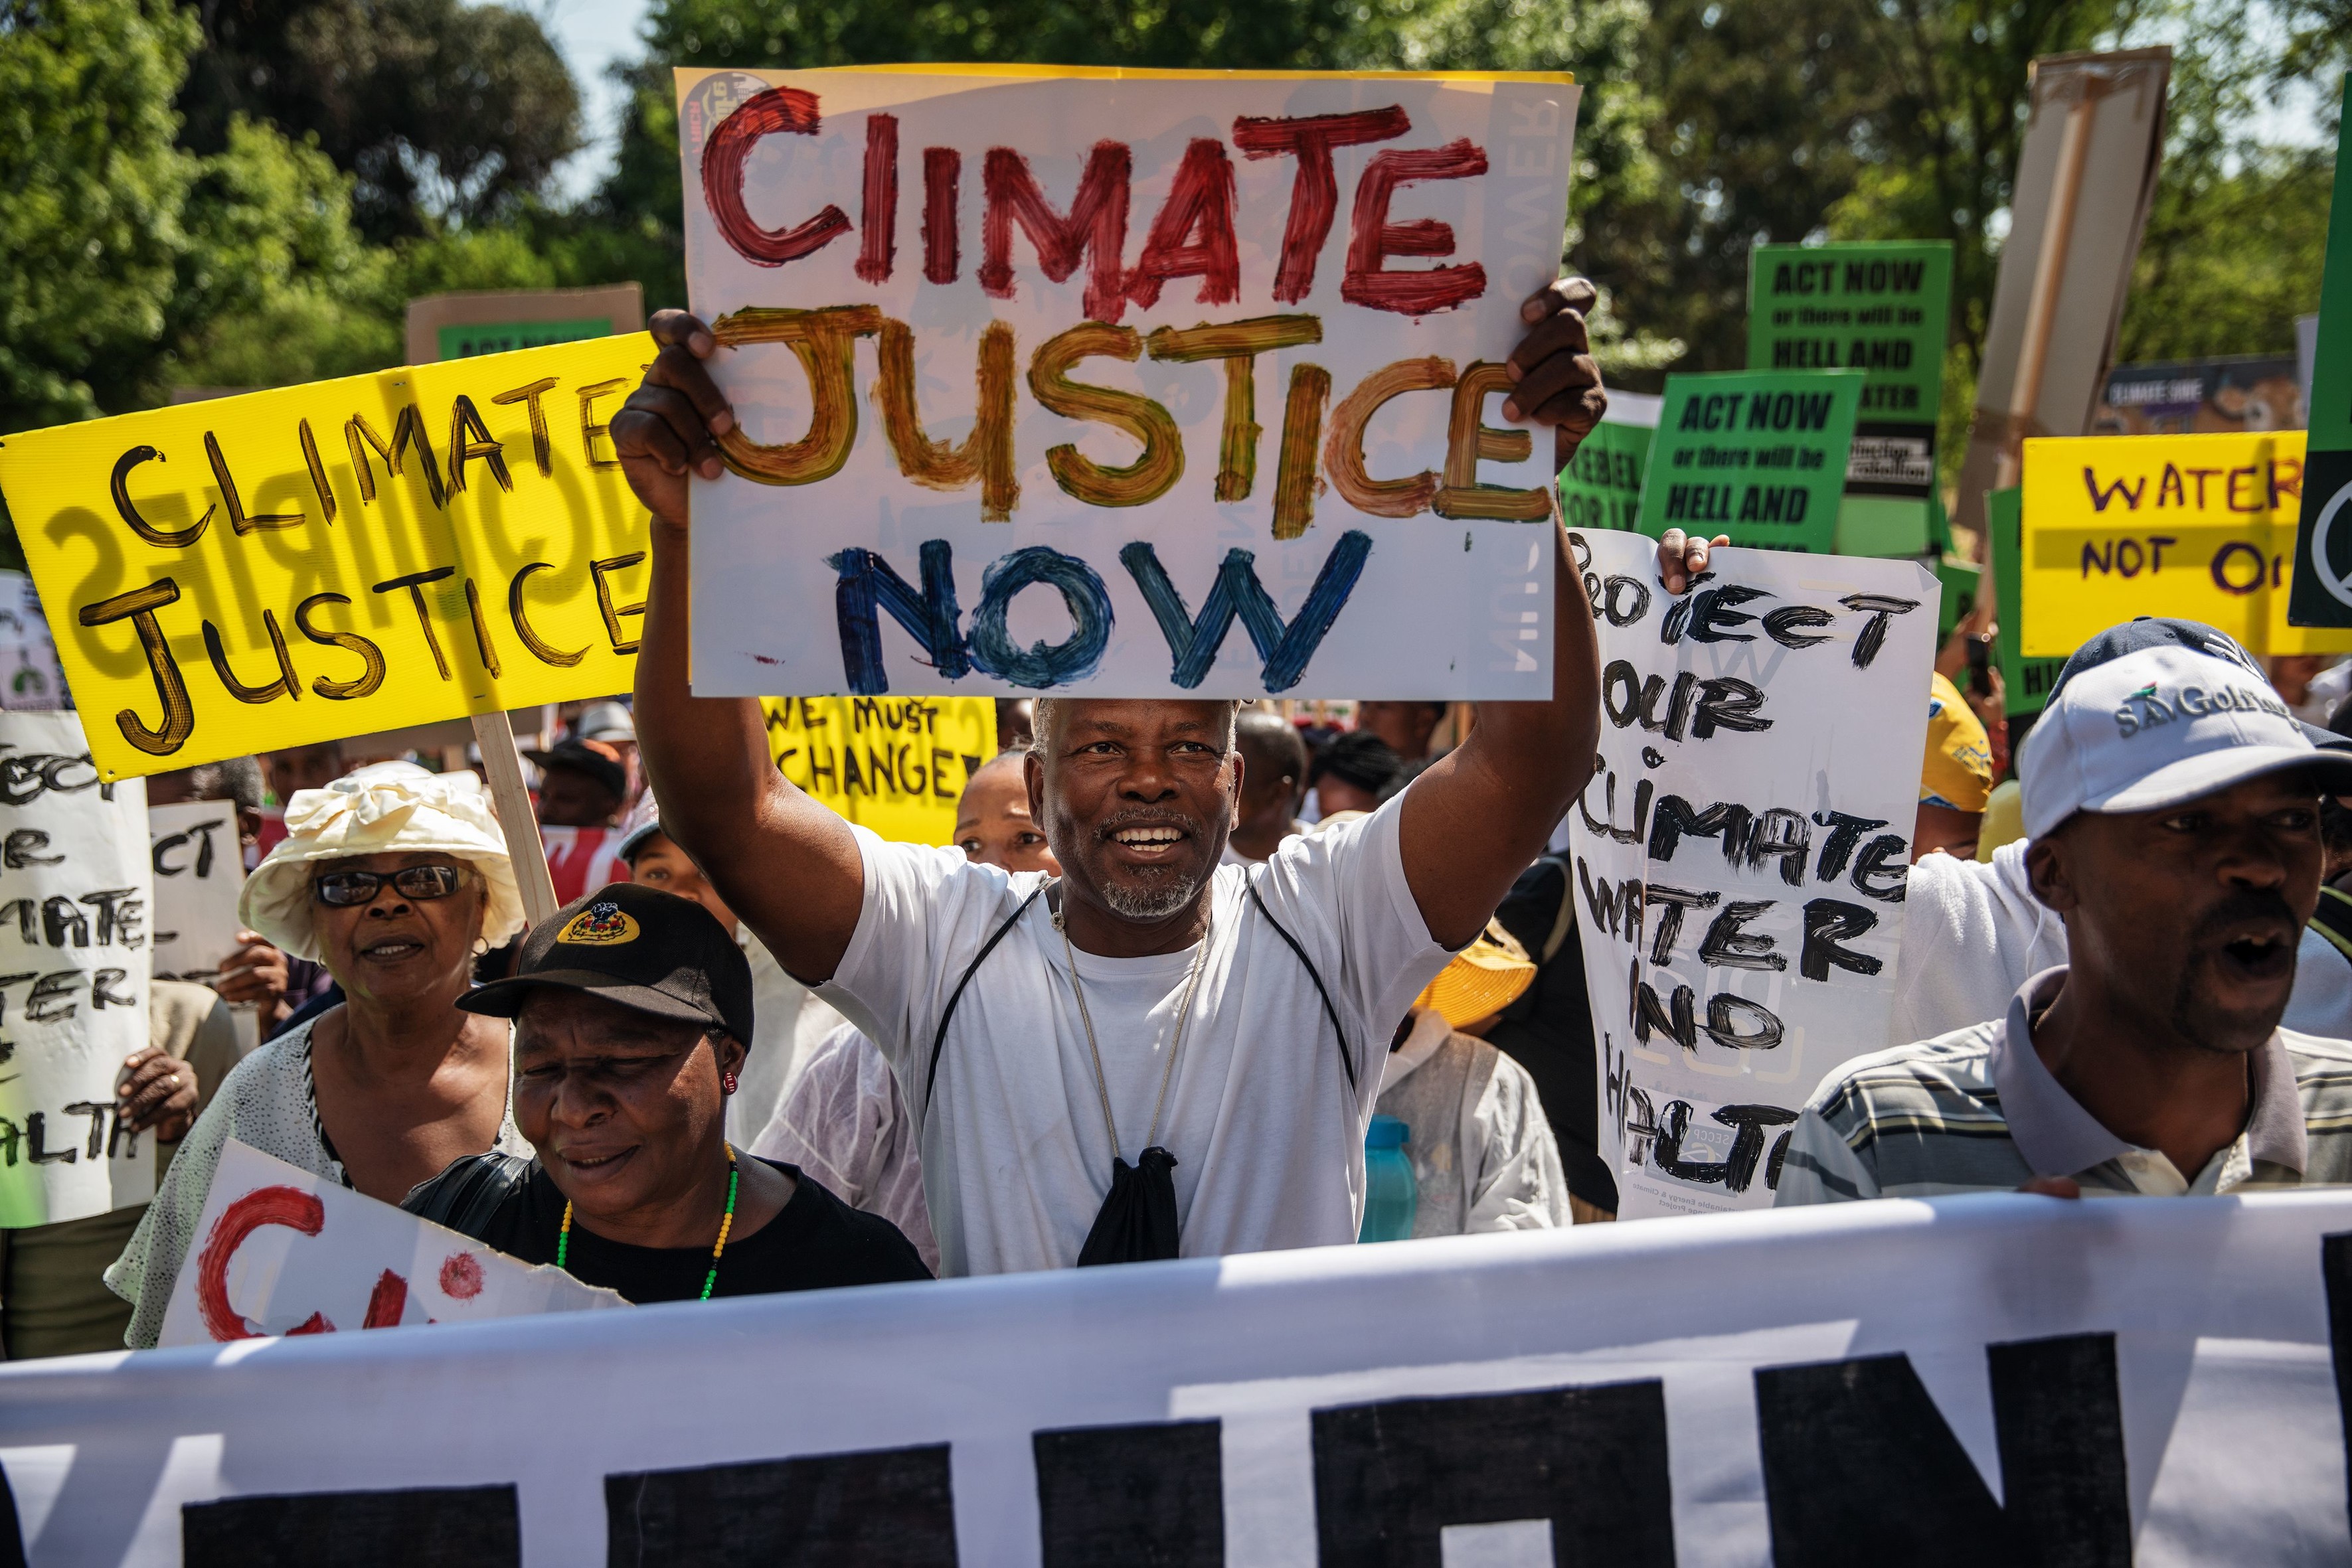 Eine Menschenmenge, in der viele Plakate hochhalten, auf denen die Menschen "Climate justice now", also "Klimagerechtigkeit jetzt" fordern. 